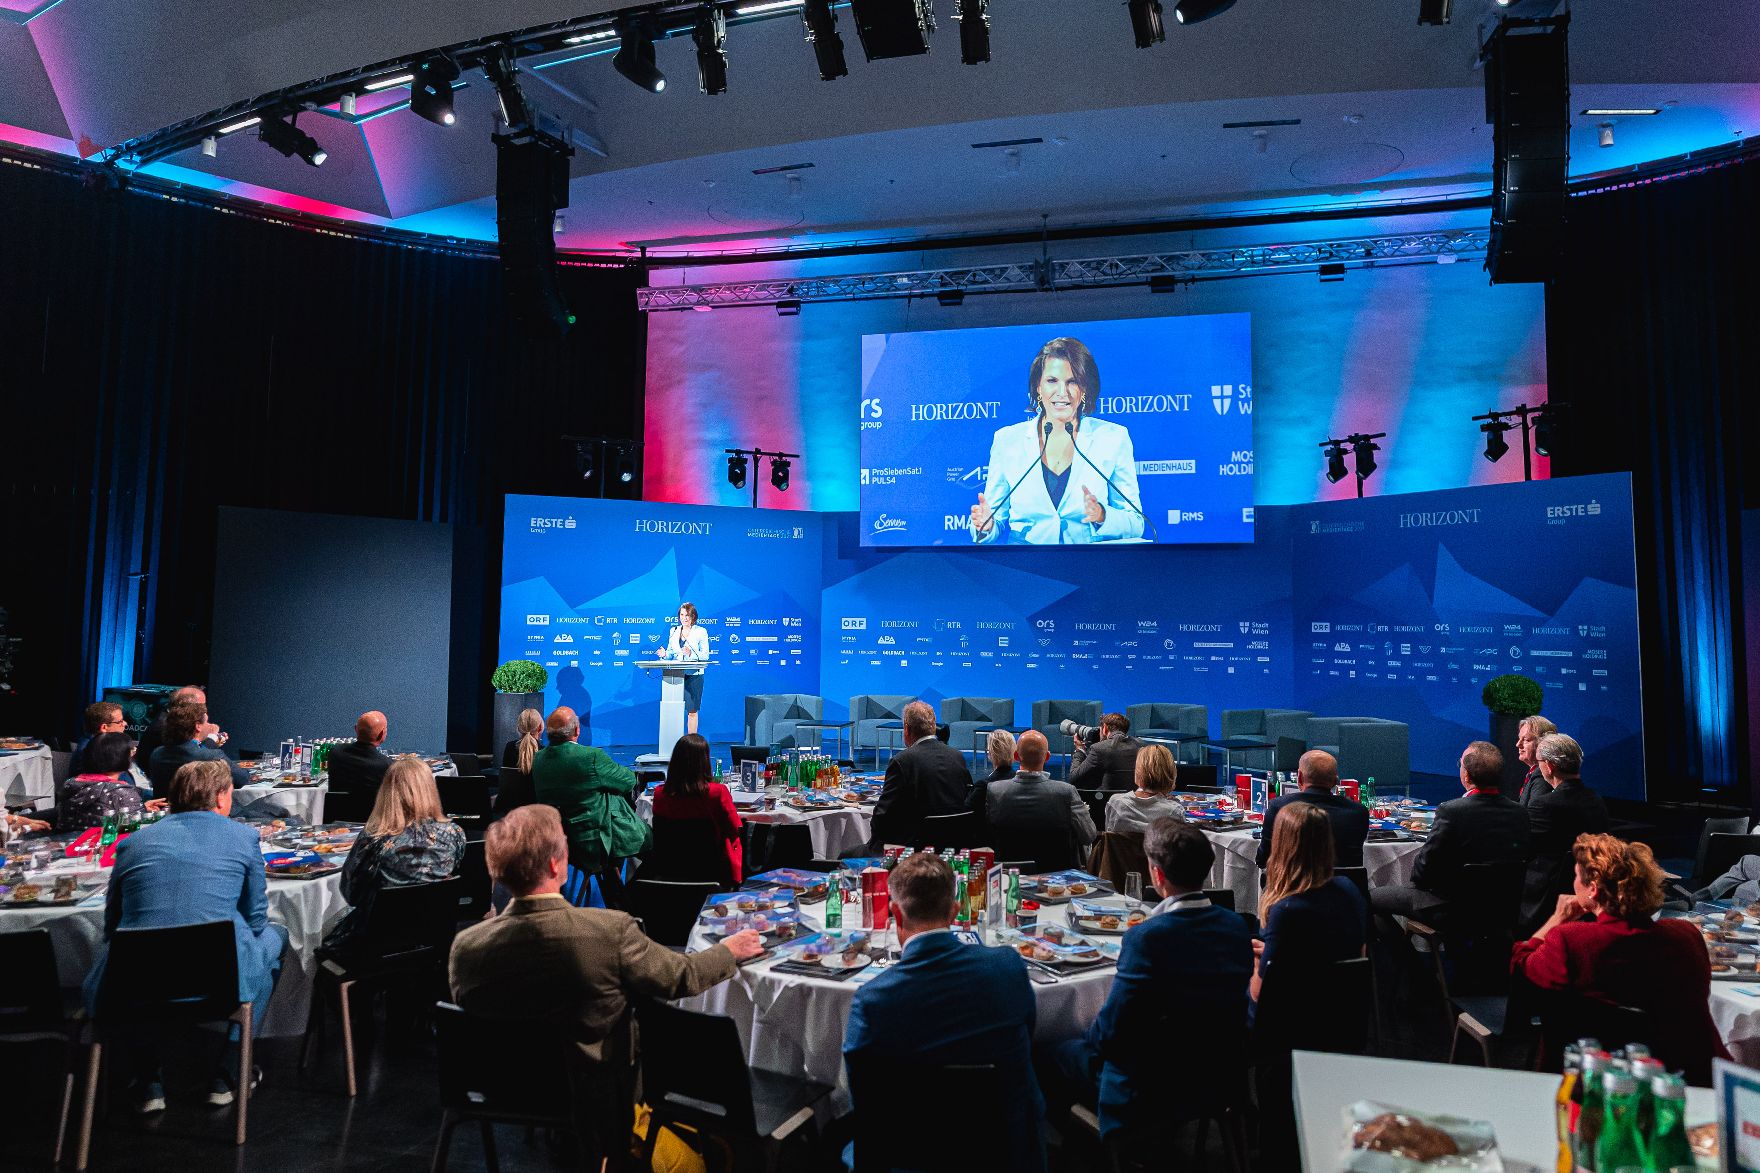 Am 22. September 2021 hielt Bundesministerin Karoline Edtstadler (im Bild) eine Rede bei der Eröffnung der 28. Österreichischen Medientage.